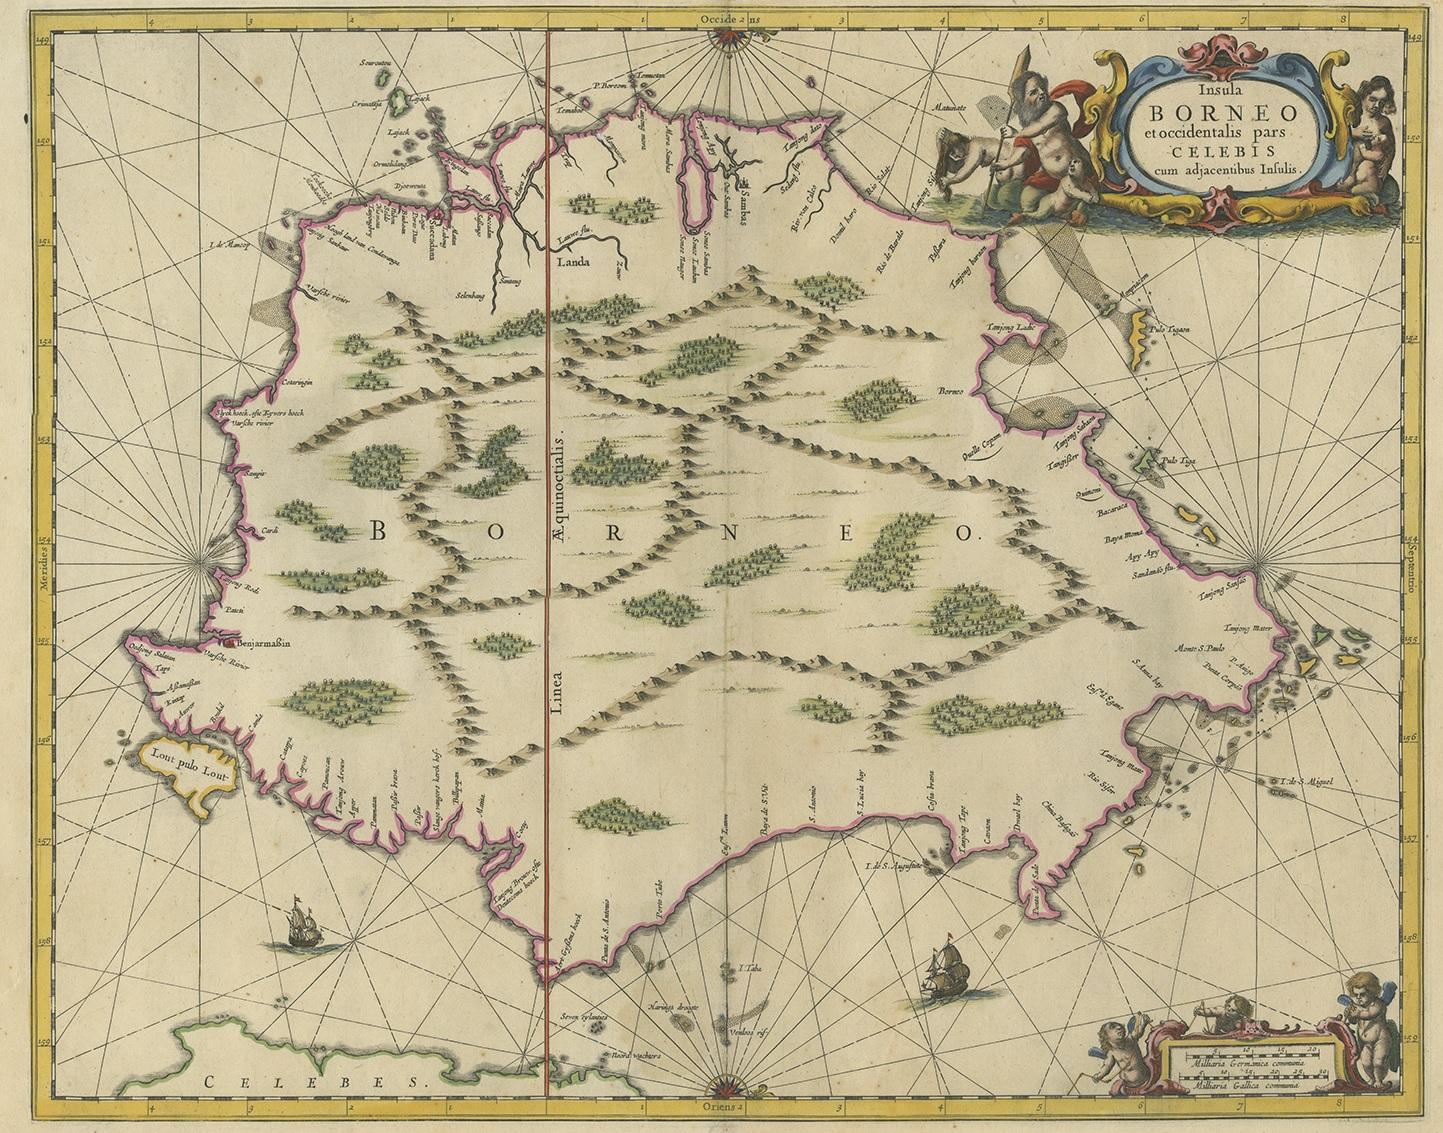 Antique map titled 'Insula Borneo et Occidentalis pars Celebis cum adjacentibus Insulis'. Rare sea chart of the island of Borneo. Published by J. Janssonius, circa 1650.